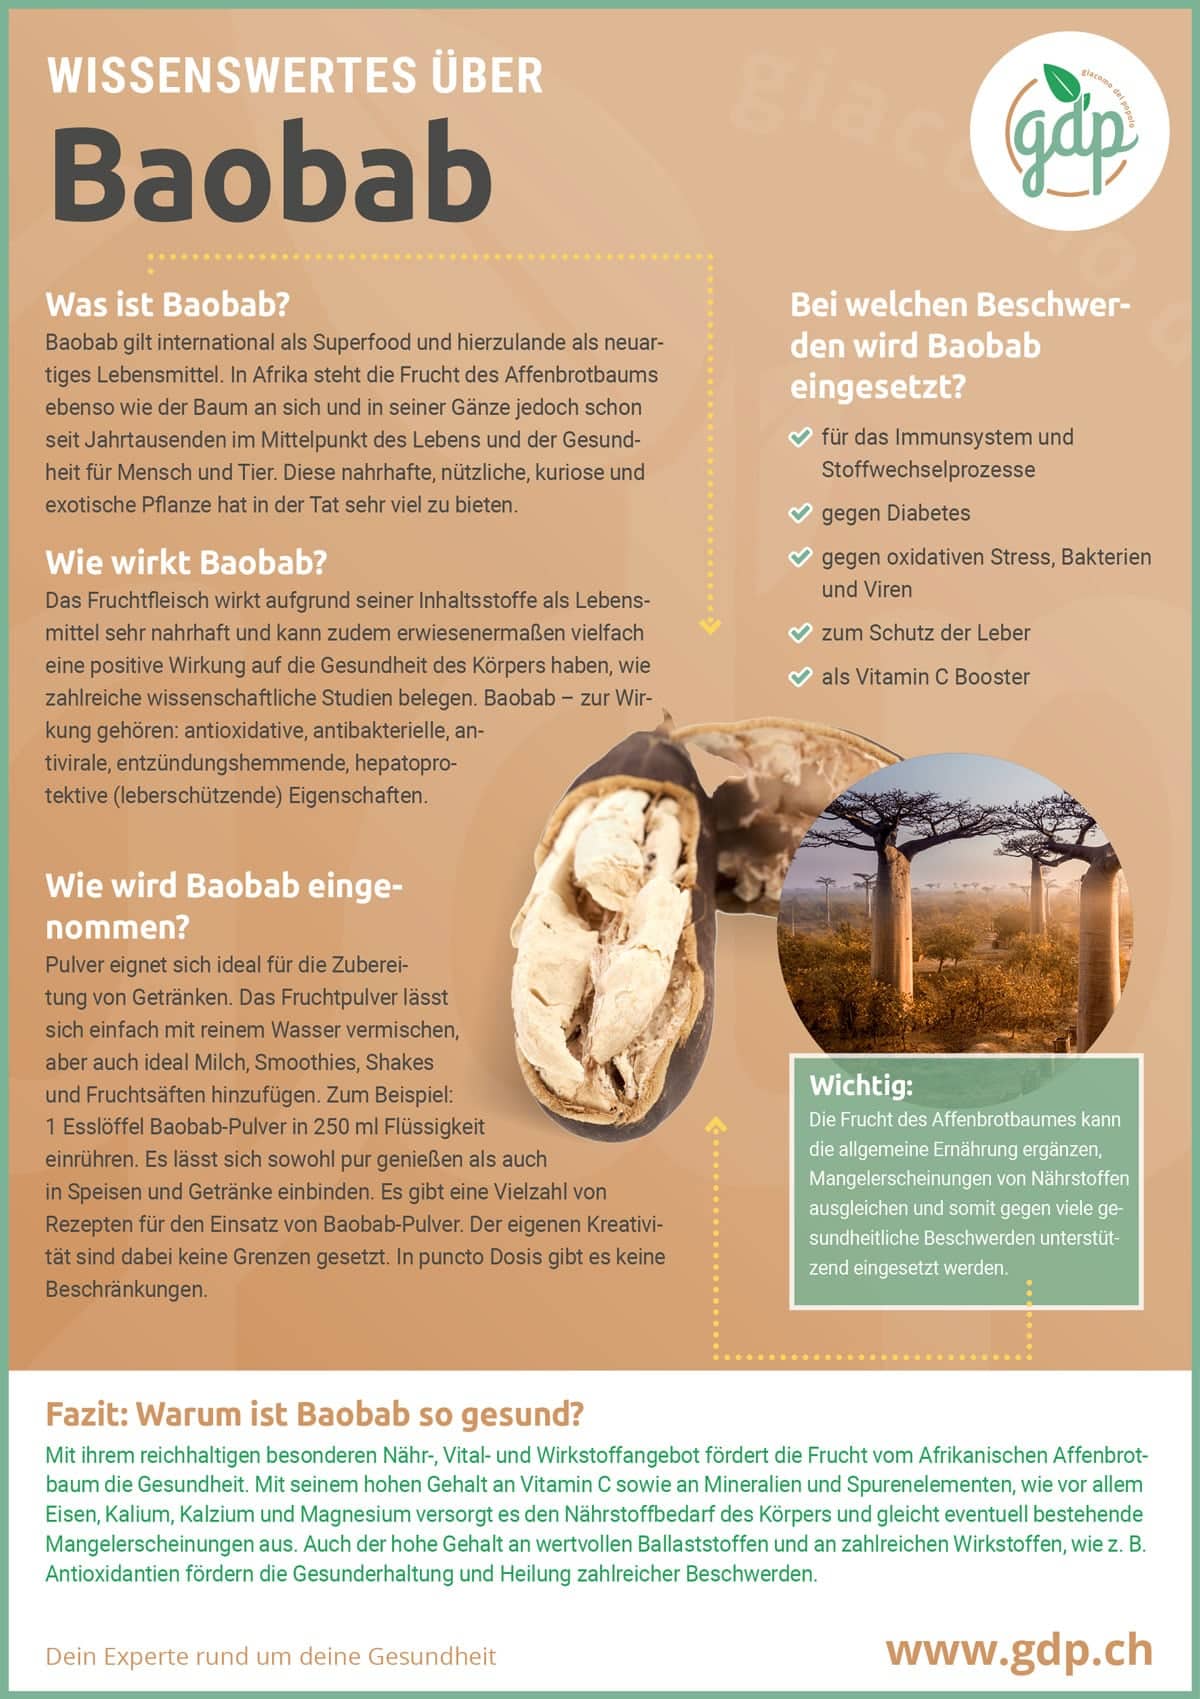 Baobab gdp Infografik